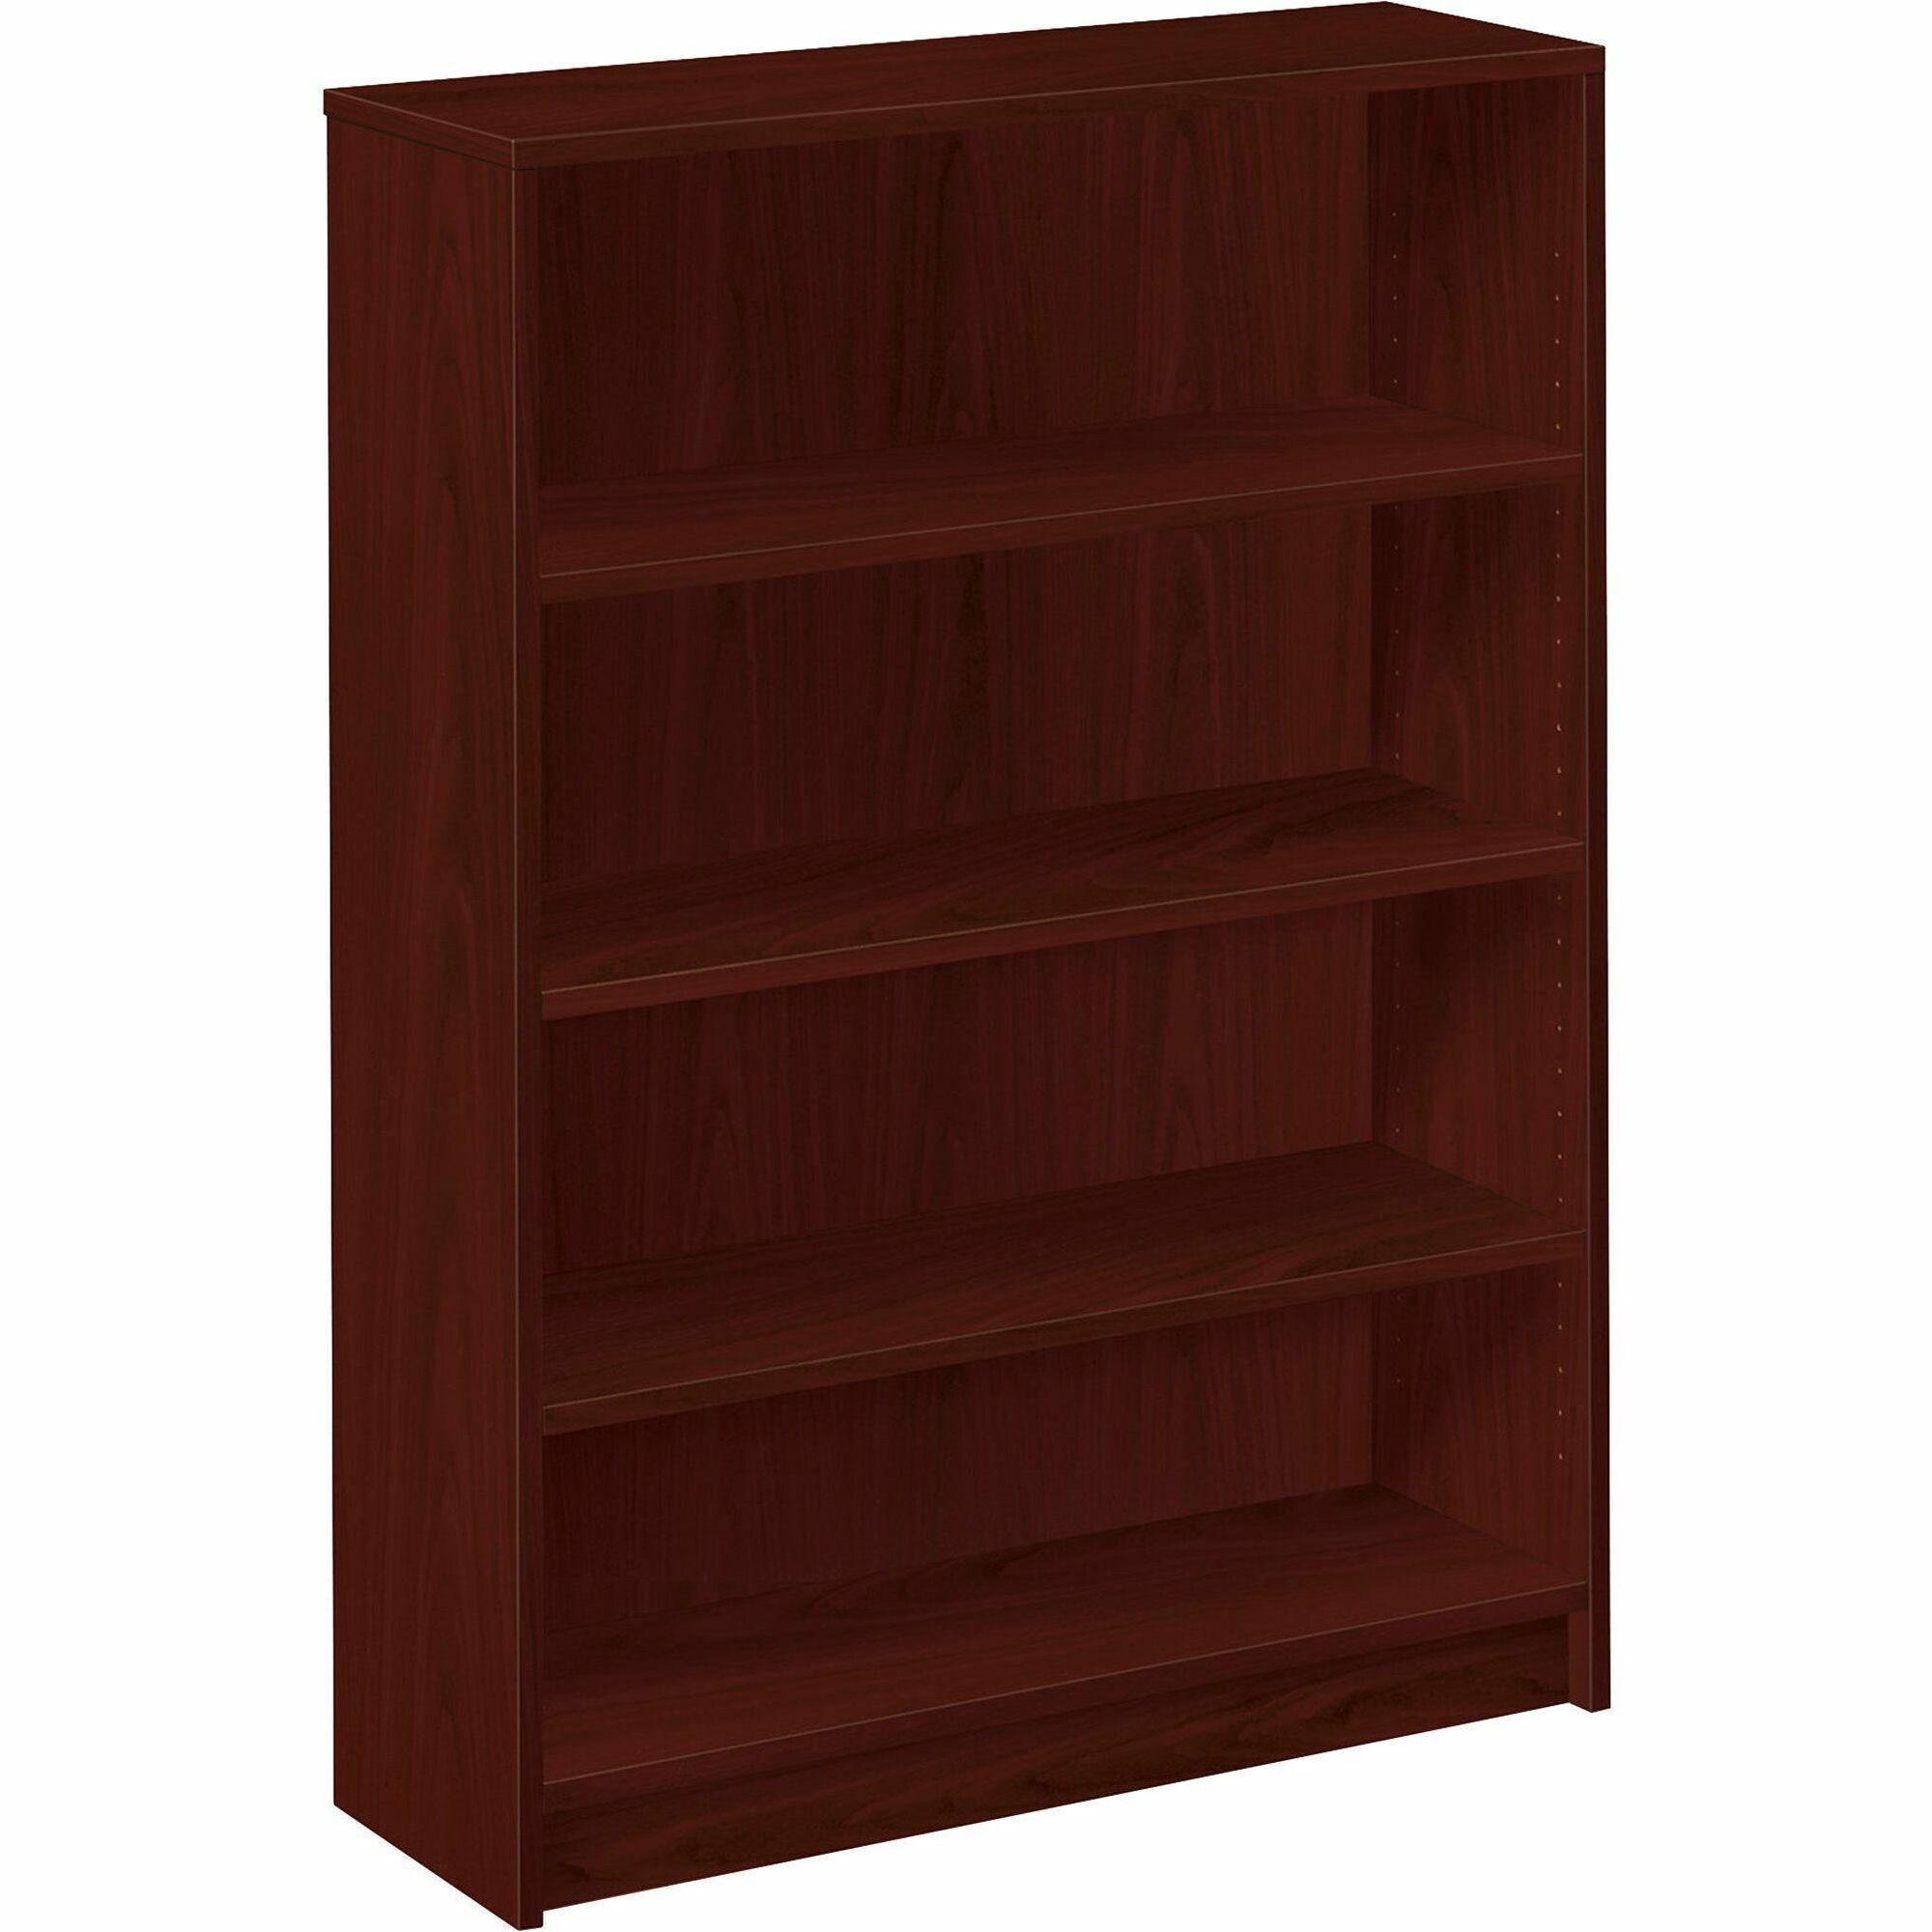 HON 1870 H1874 Bookcase - 36" x 11.5"48.8" - 4 Shelve(s) - Finish: Mahogany - 